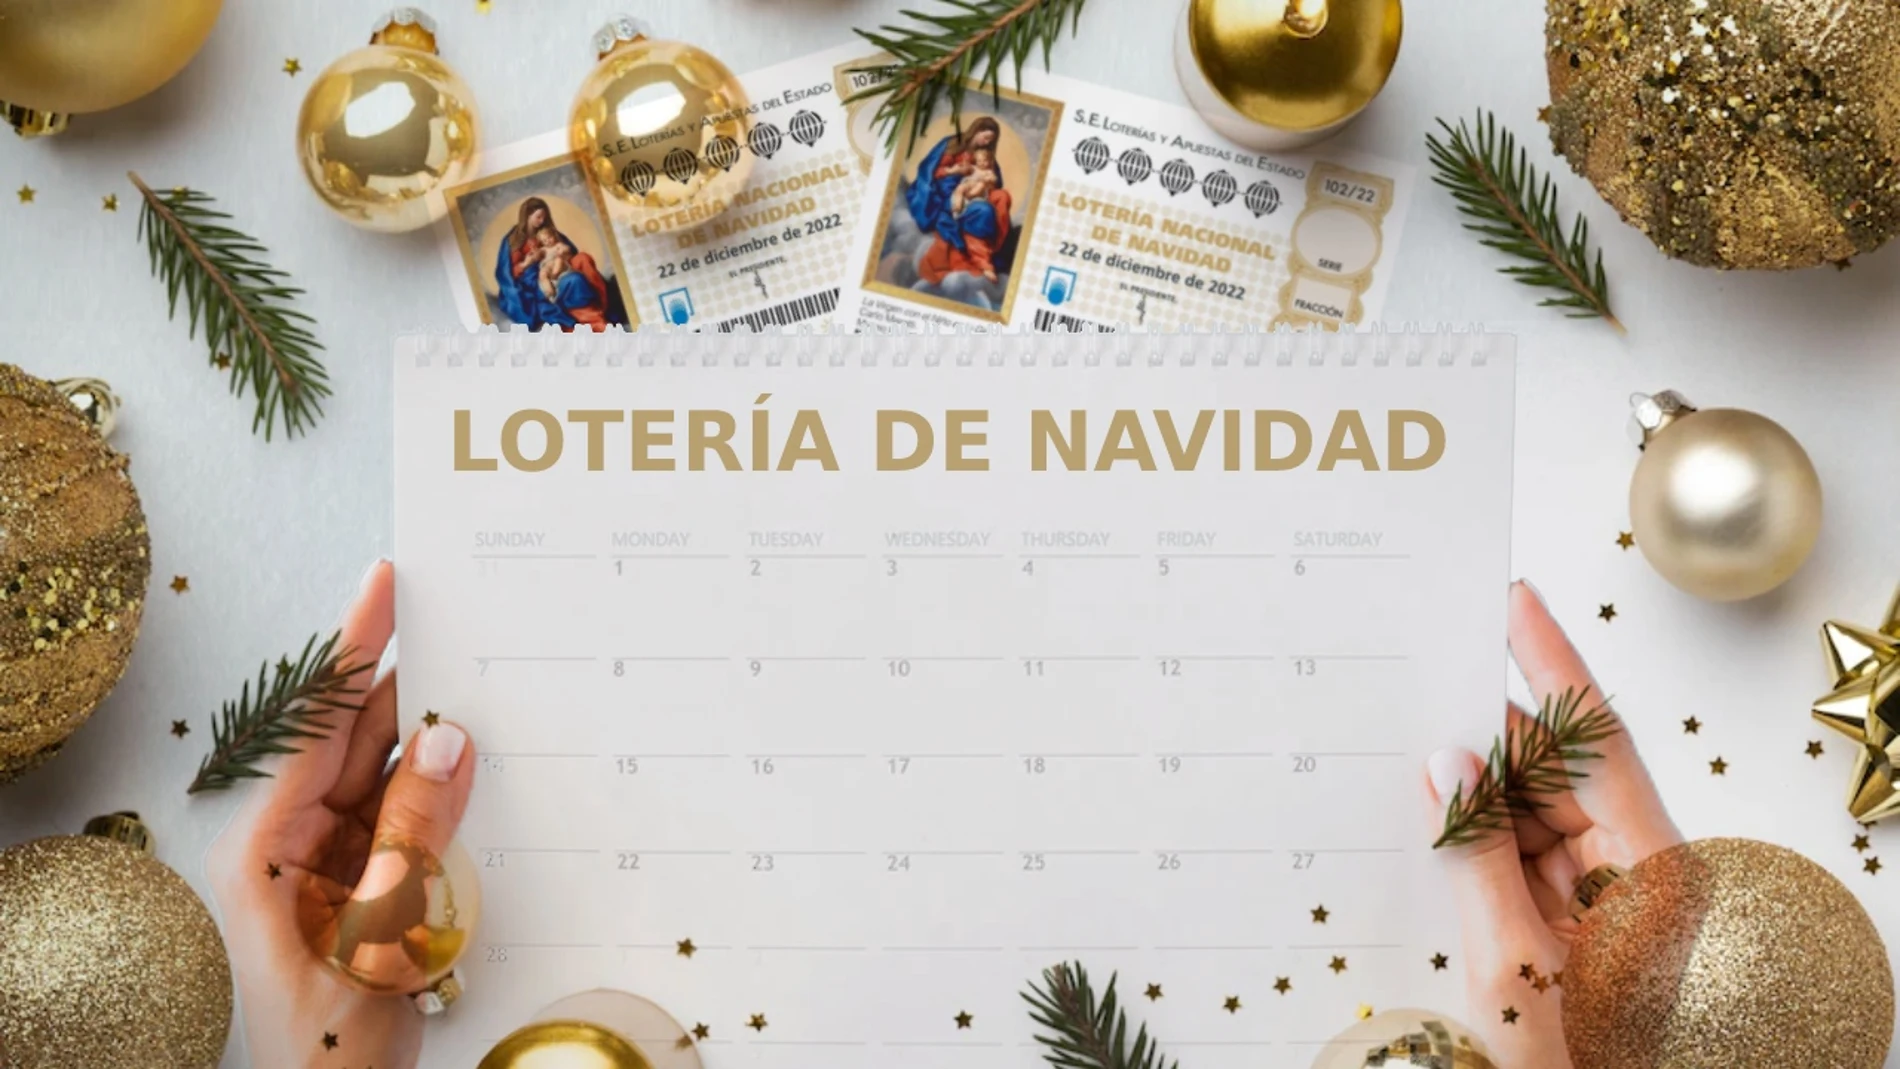 Día y hora del sorteo de la Lotería de Navidad 2022 el 22 de diciembre